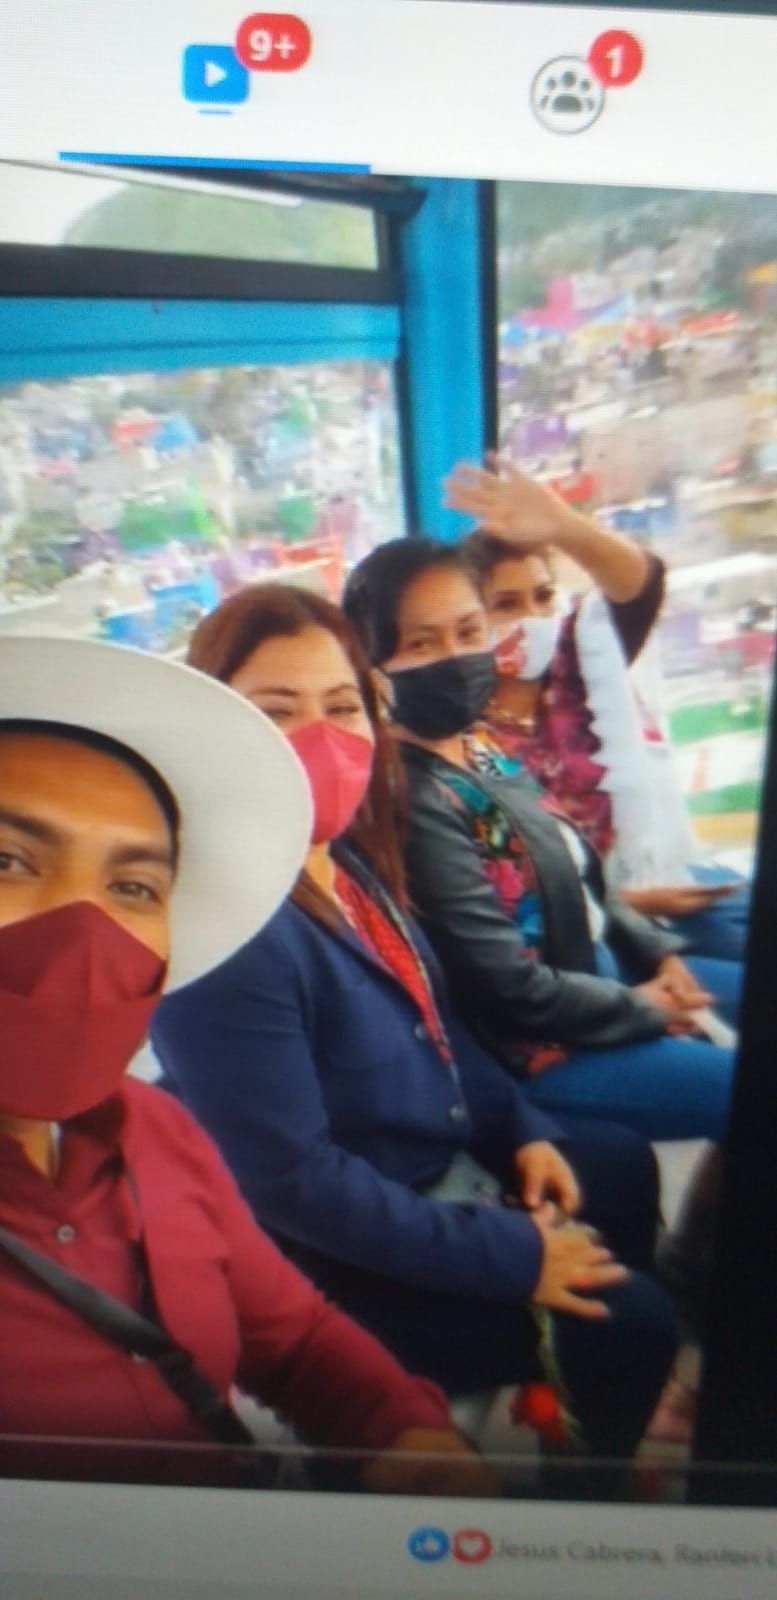 Acompañan en viaje por Cablebus a la alcaldesa de Ixtapalapa Clara Brugada los alcaldes electos Adolfo Cerqueda por Nezahualcoyotl y Xóchitl Jiménez de Chimalhuacan